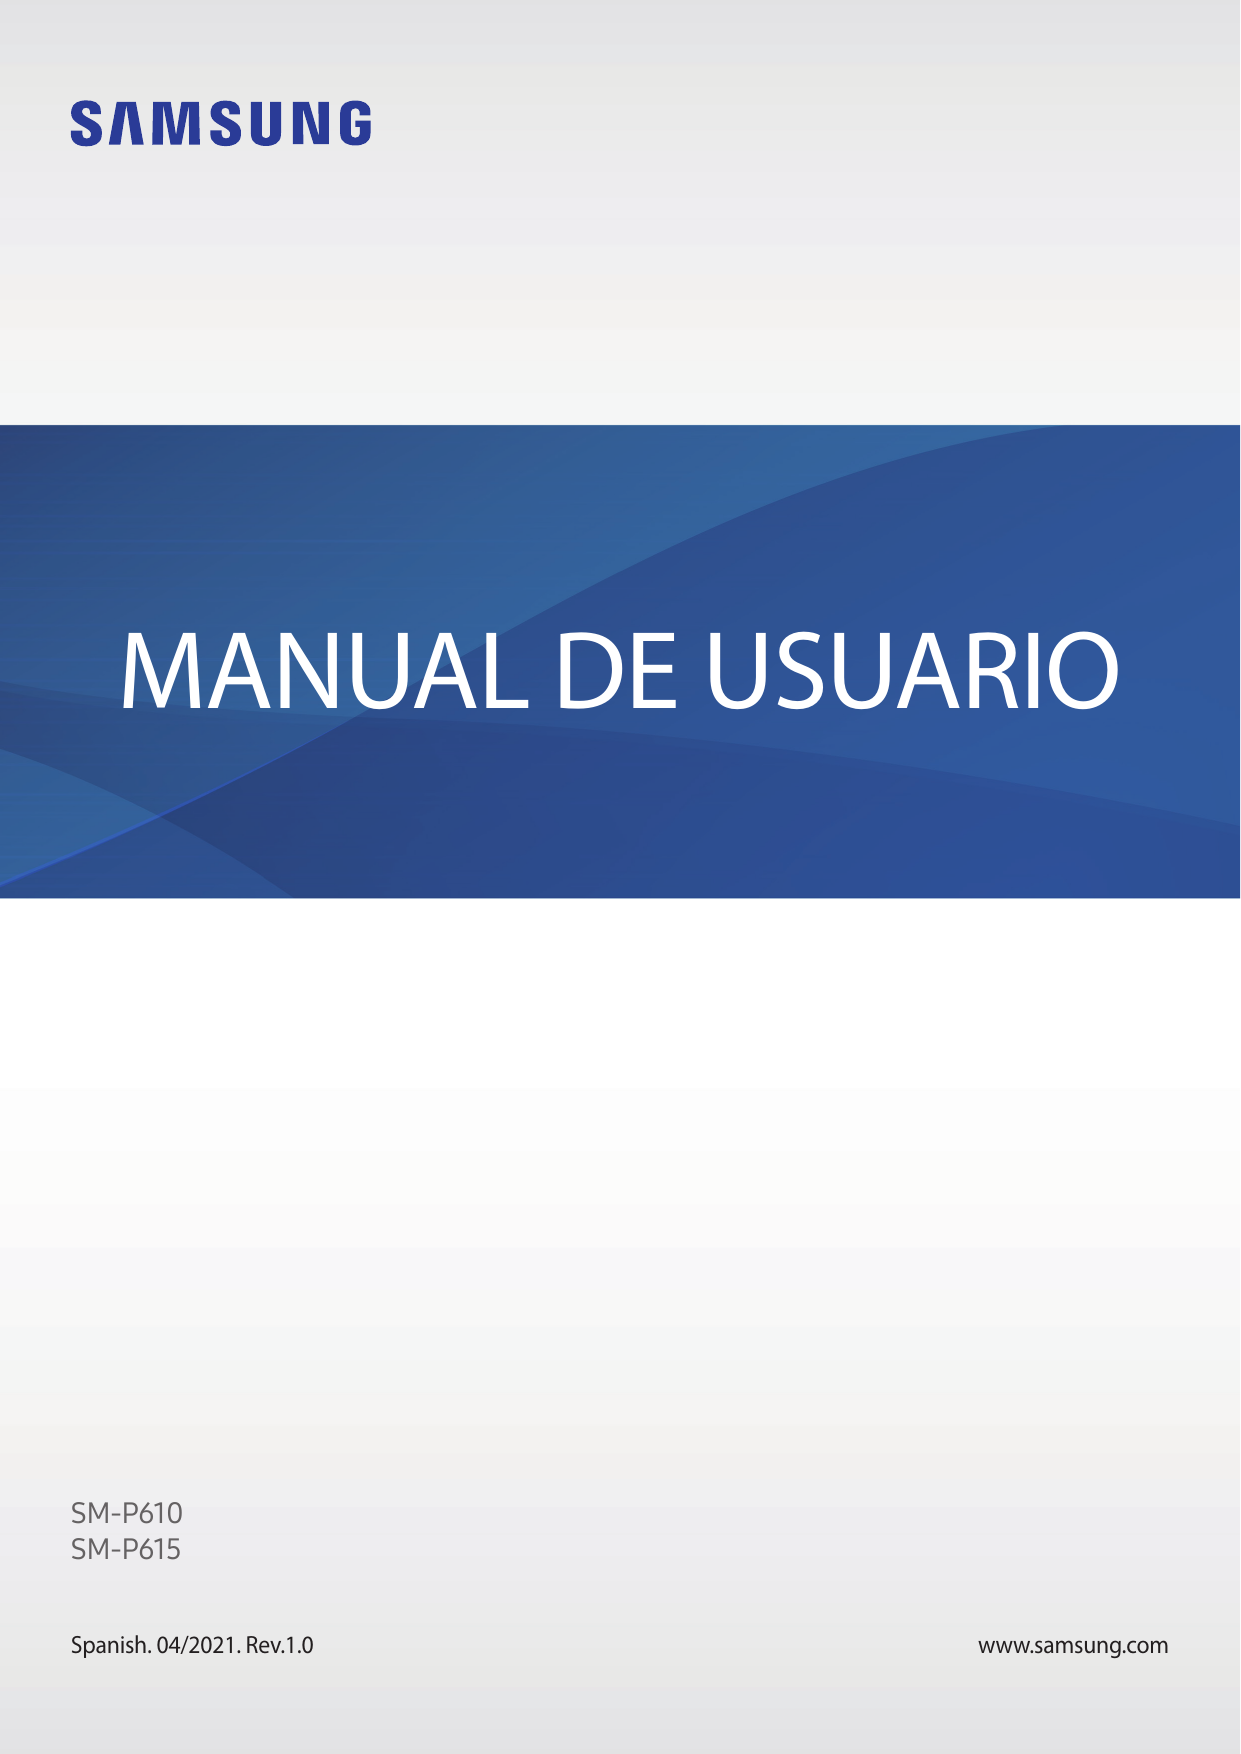 MANUAL DE USUARIOSM-P610SM-P615Spanish. 04/2021. Rev.1.0www.samsung.com